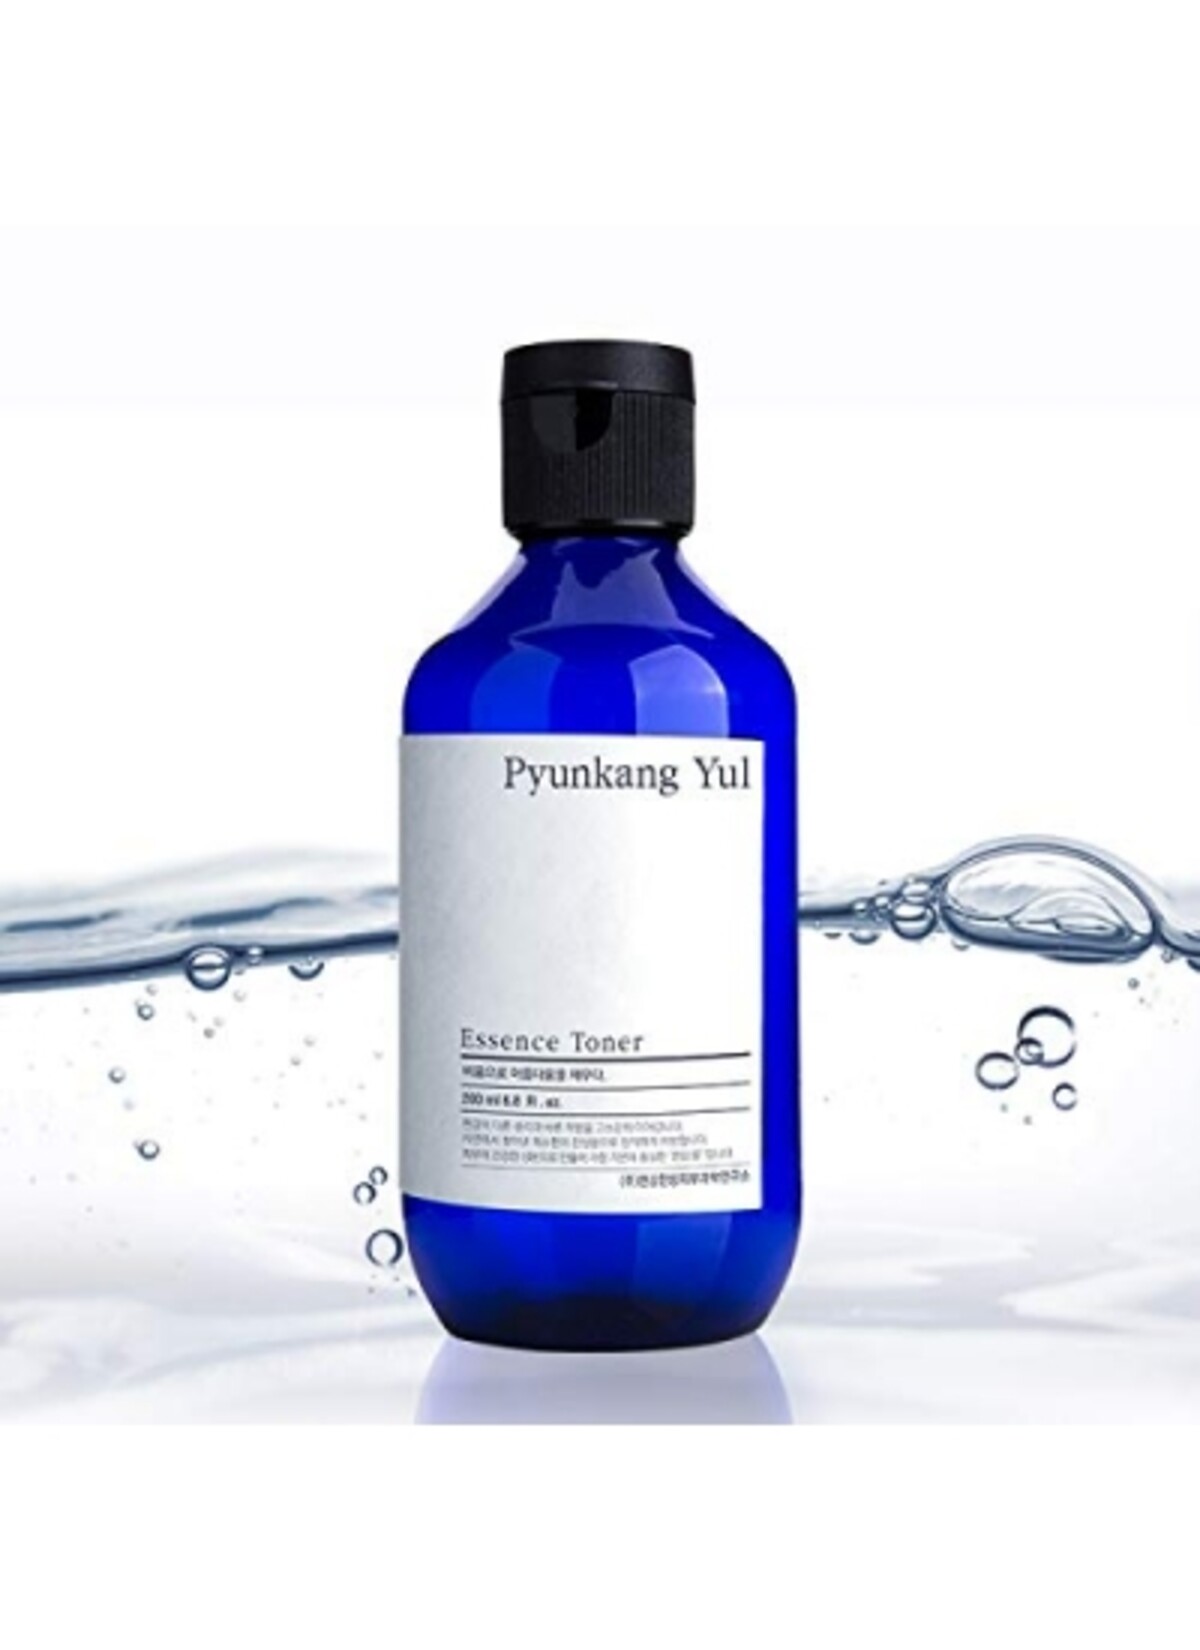 Esencia Pyunkang Yul je známe pre svoje antioxidačné a protizápalové vlastnosti. Rýchlo sa vstrebáva a príjemne hydratuje. Miesto 19,90 € zaplatíš 15,92 €.